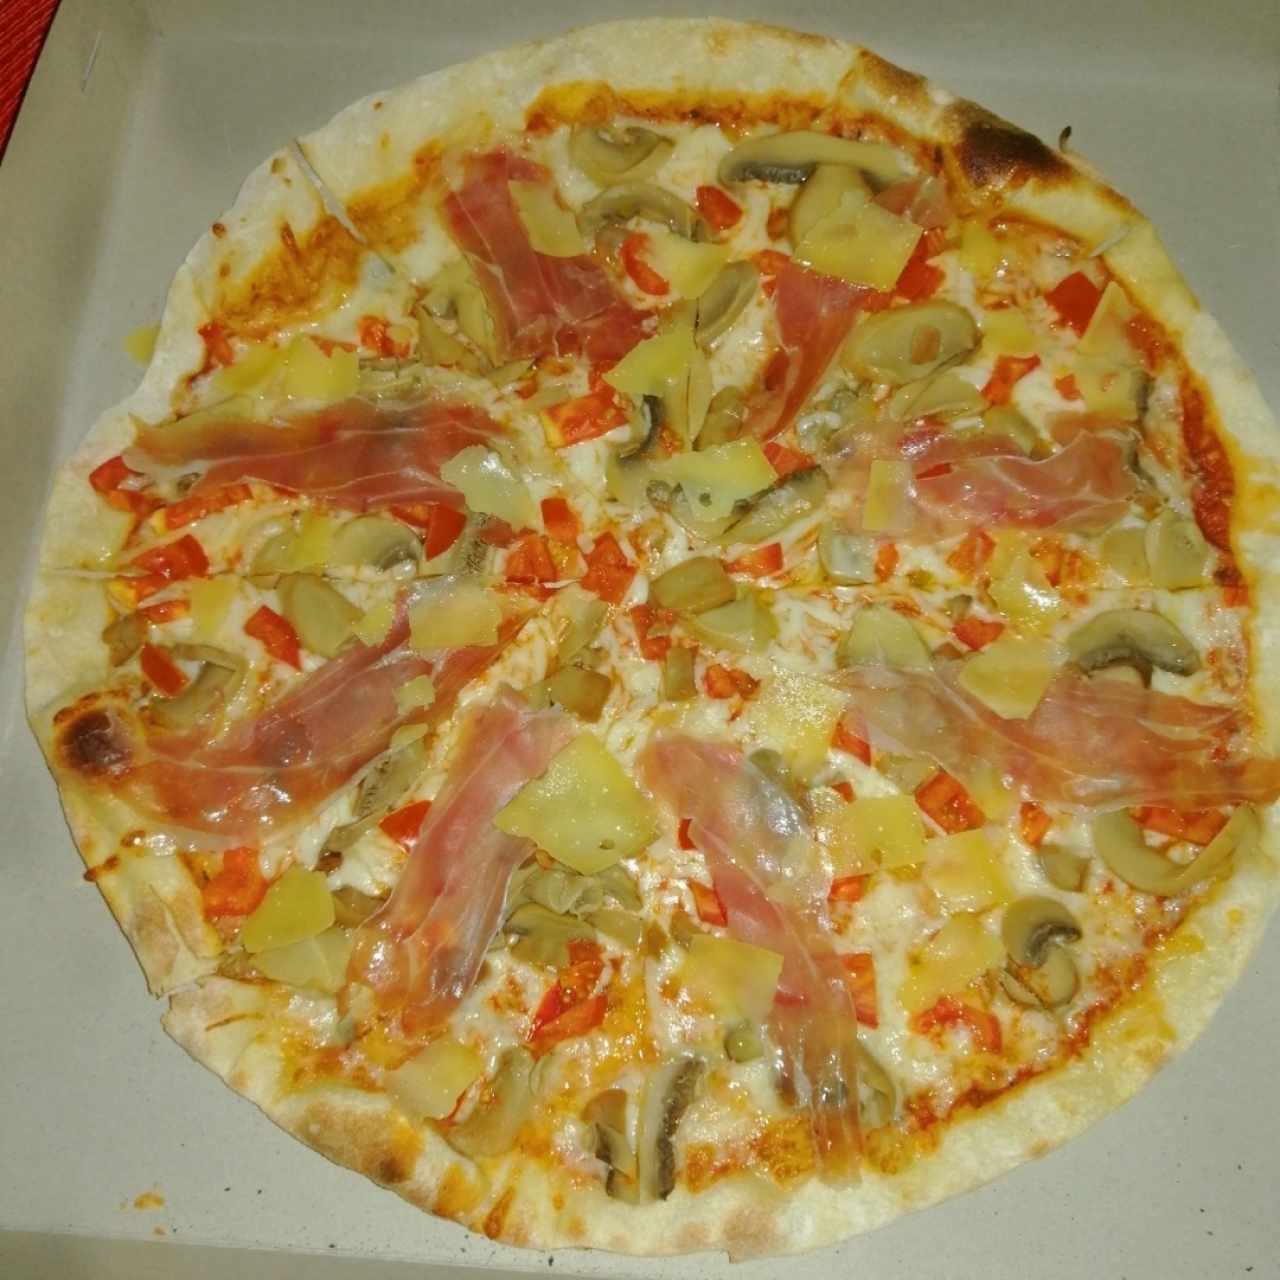 Le speciali - La pizza